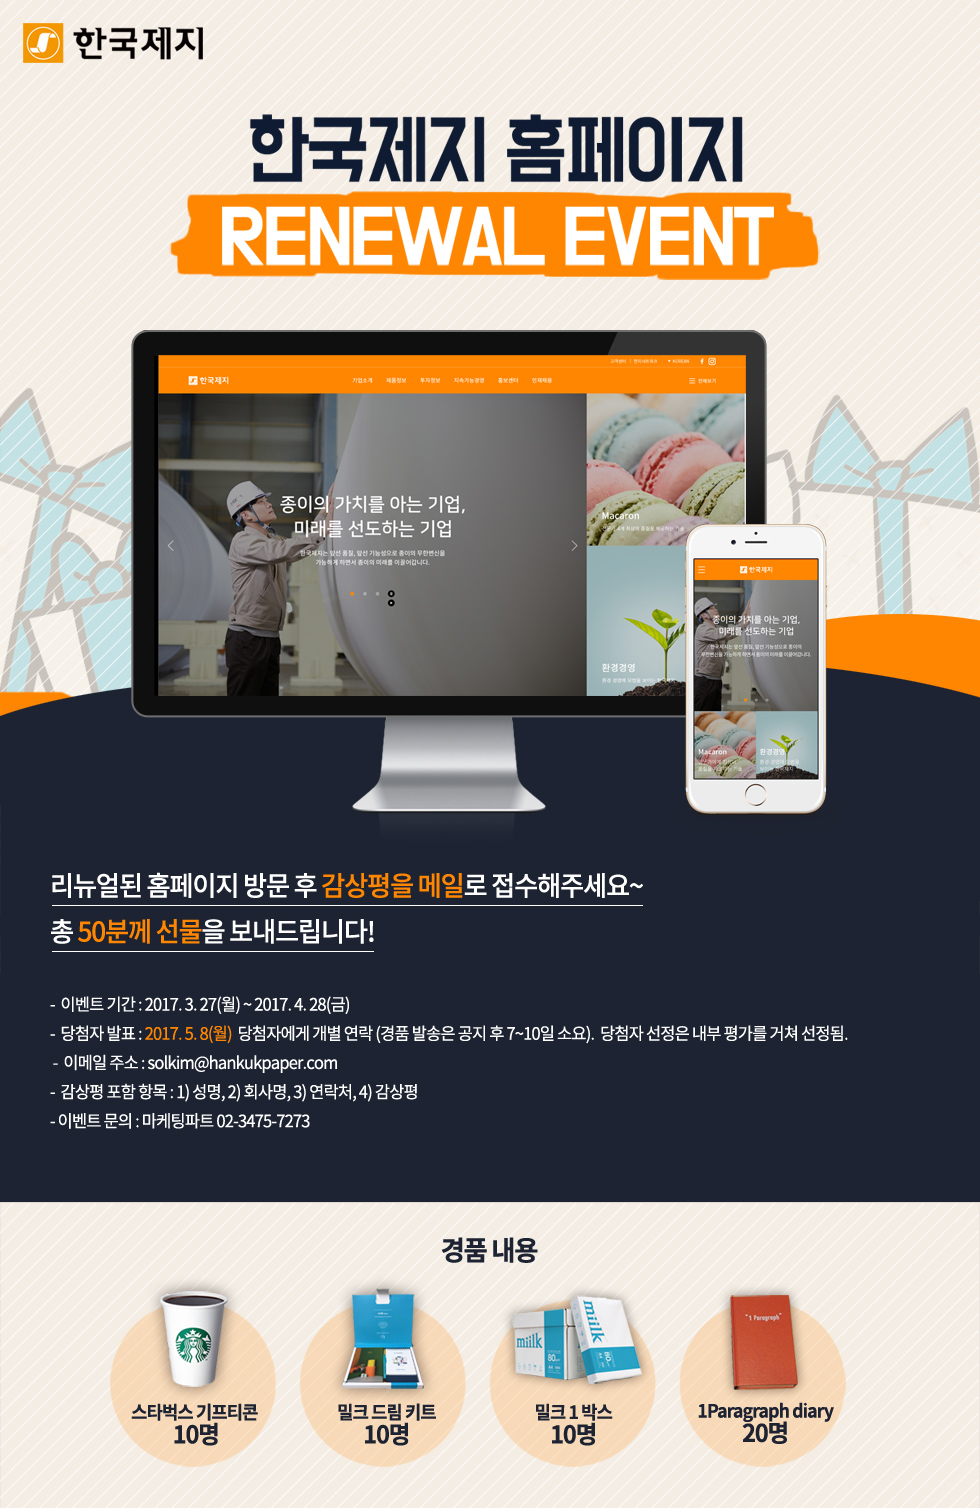 Renewal open event of  Hankuk Paper’s homepage 